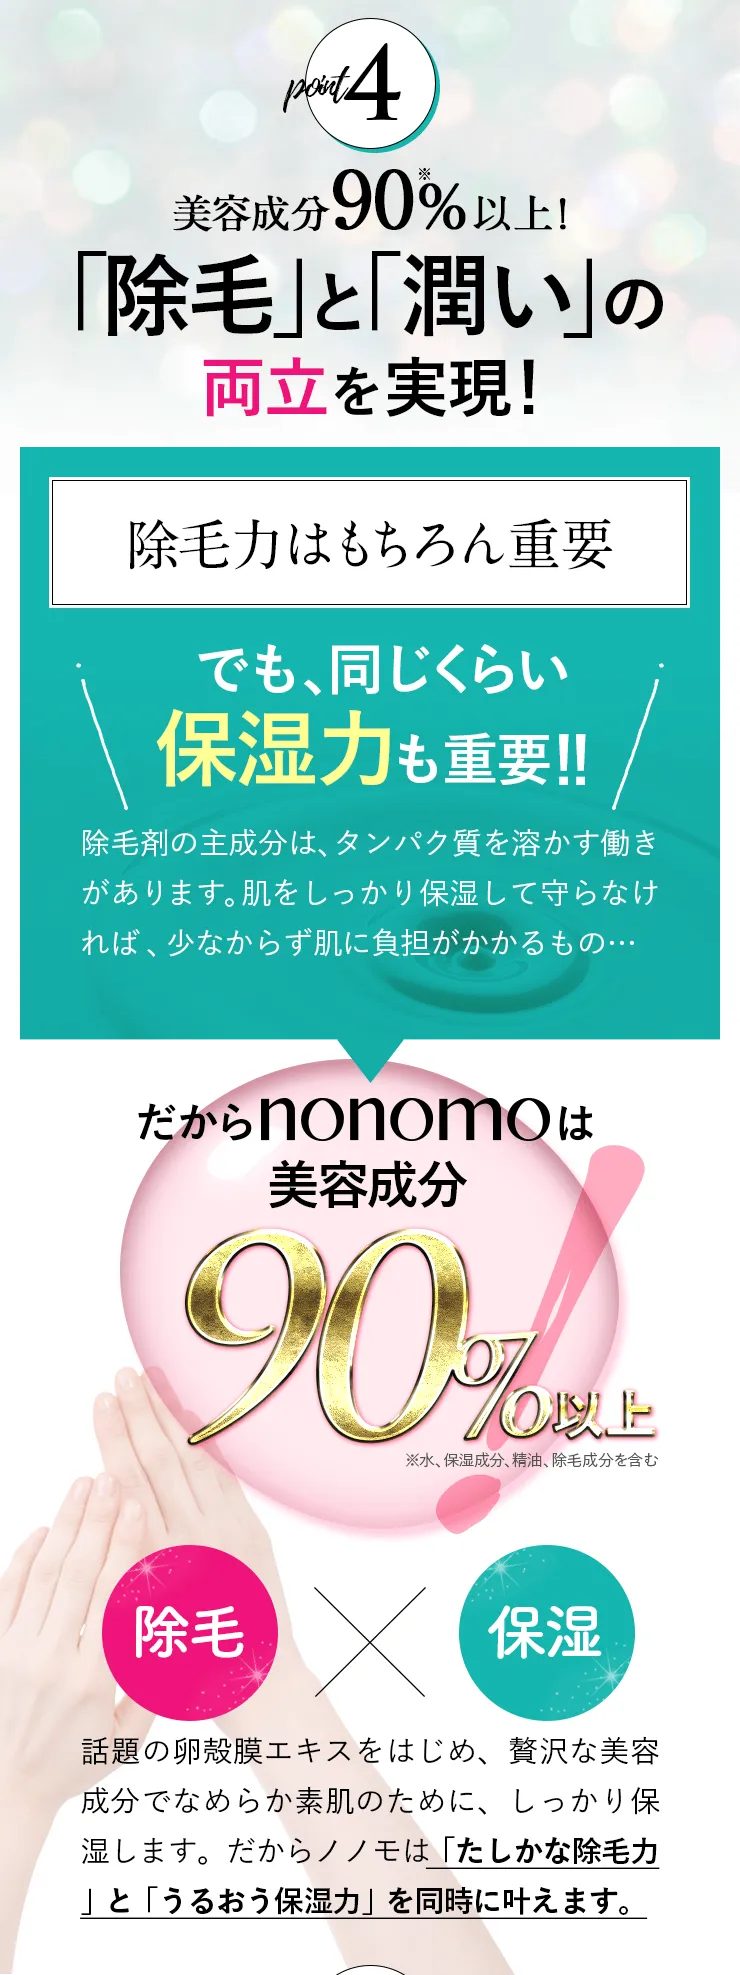 ノノモ(nonomo),特徴,効果